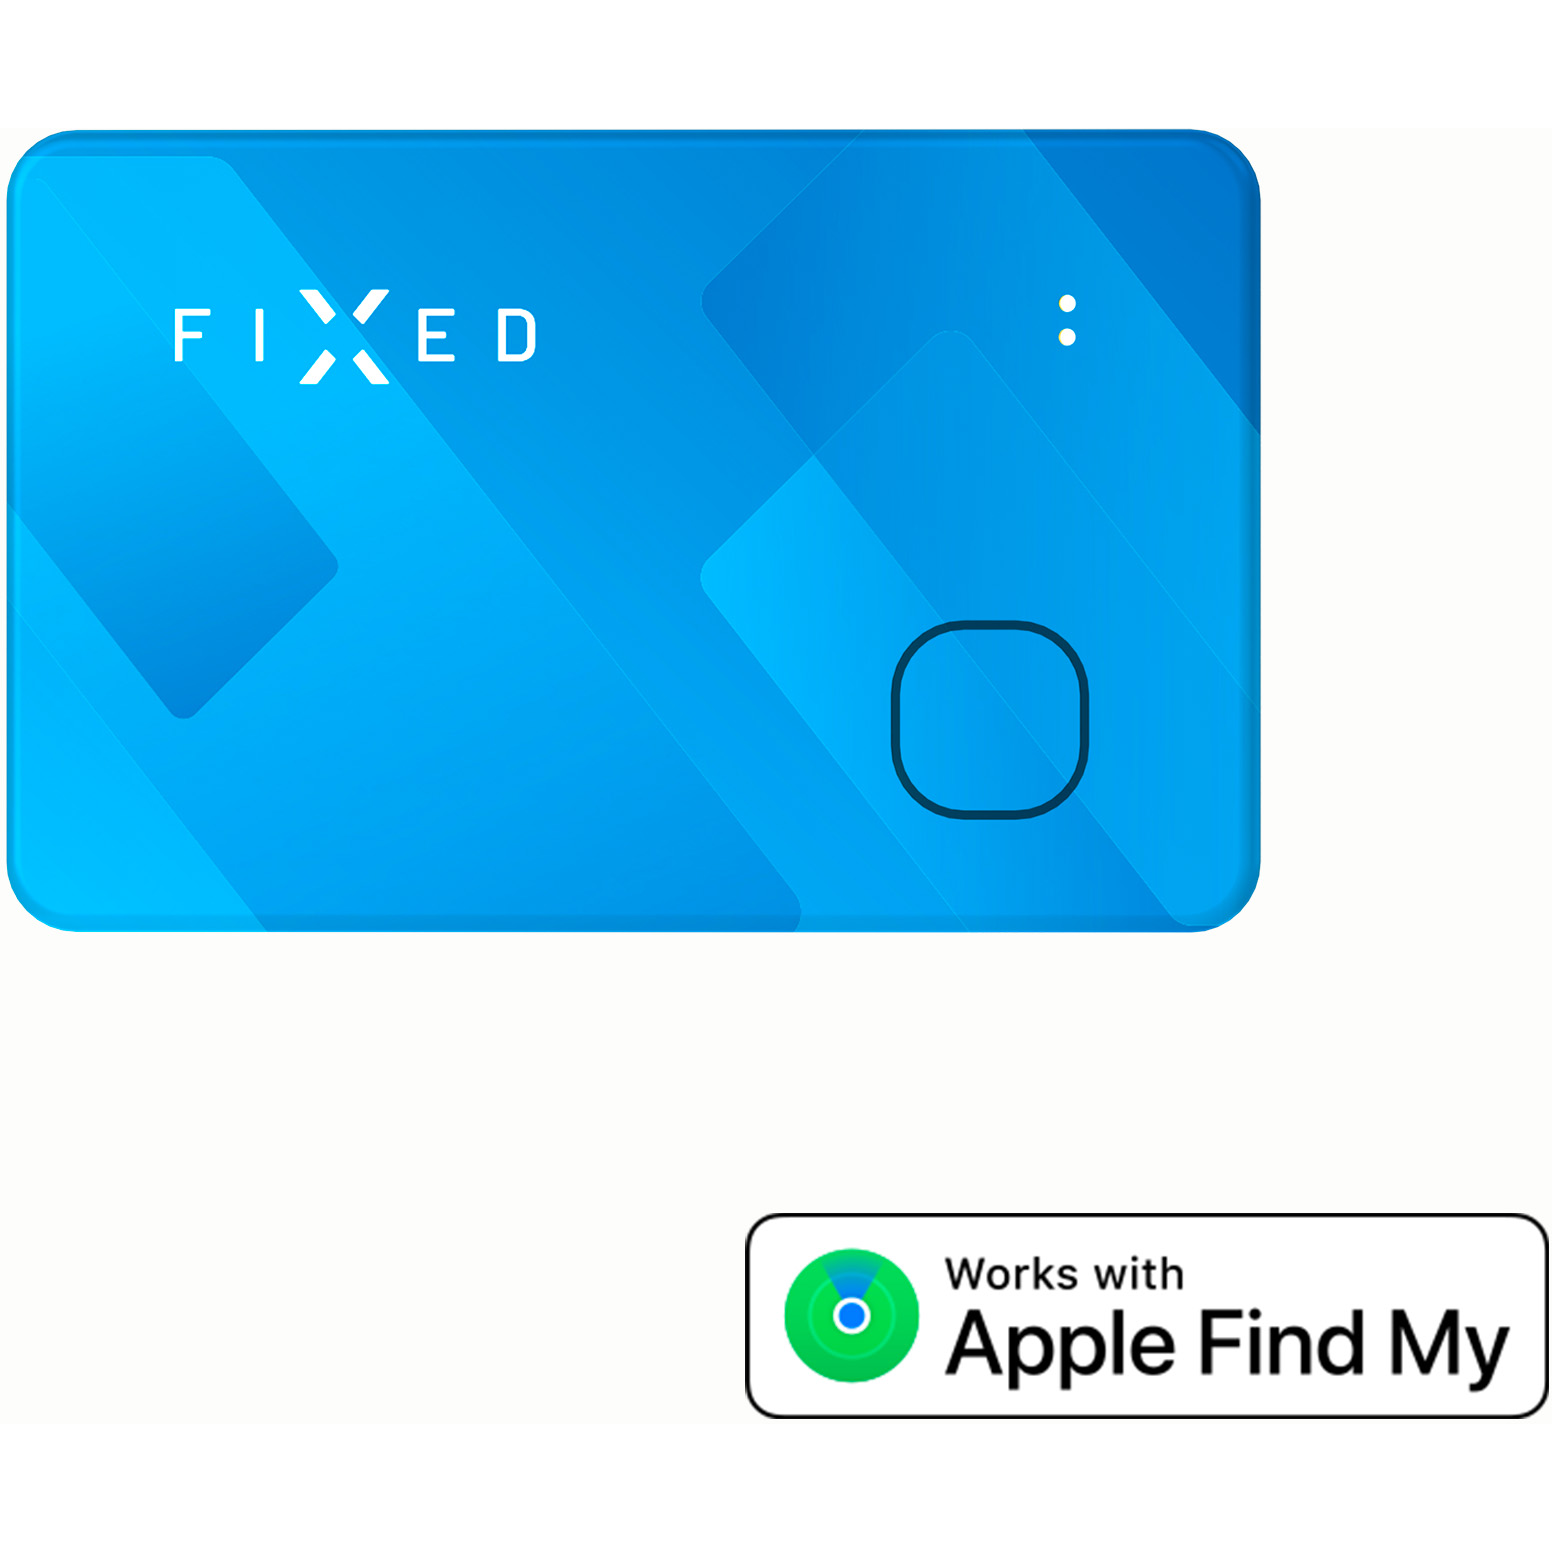 8591680152476 FIXED Tag Card Tracker til Apple Find My, blå - GPS Tracker Telefon & GPS,Tilbehør mobiltelefoner,Tilbehør til iPhone 31300000010 FIXTAG-CARD-BL